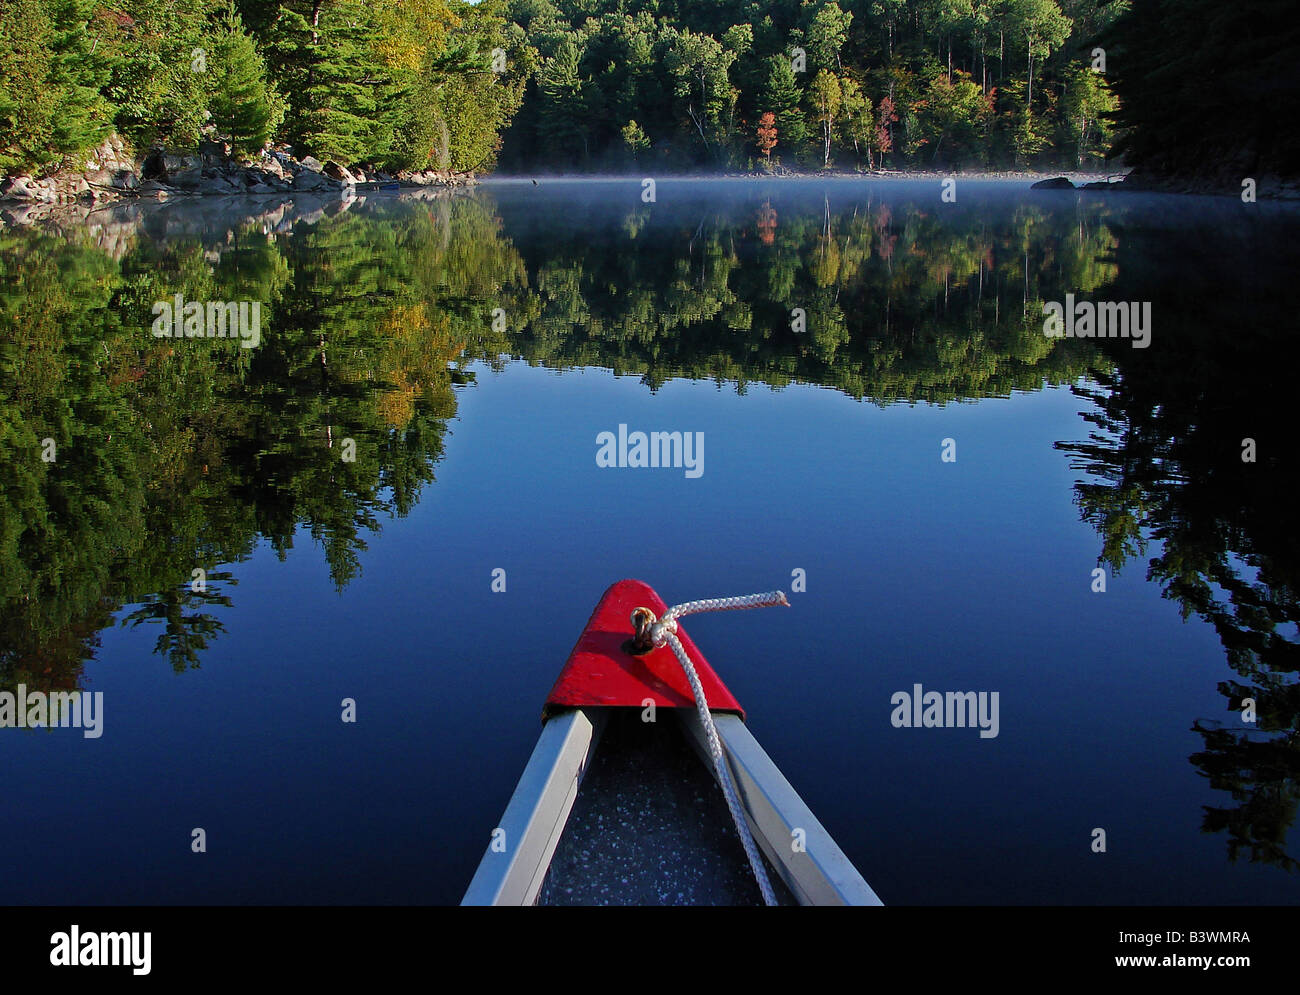 Kanu auf einem ruhigen See Stockfoto